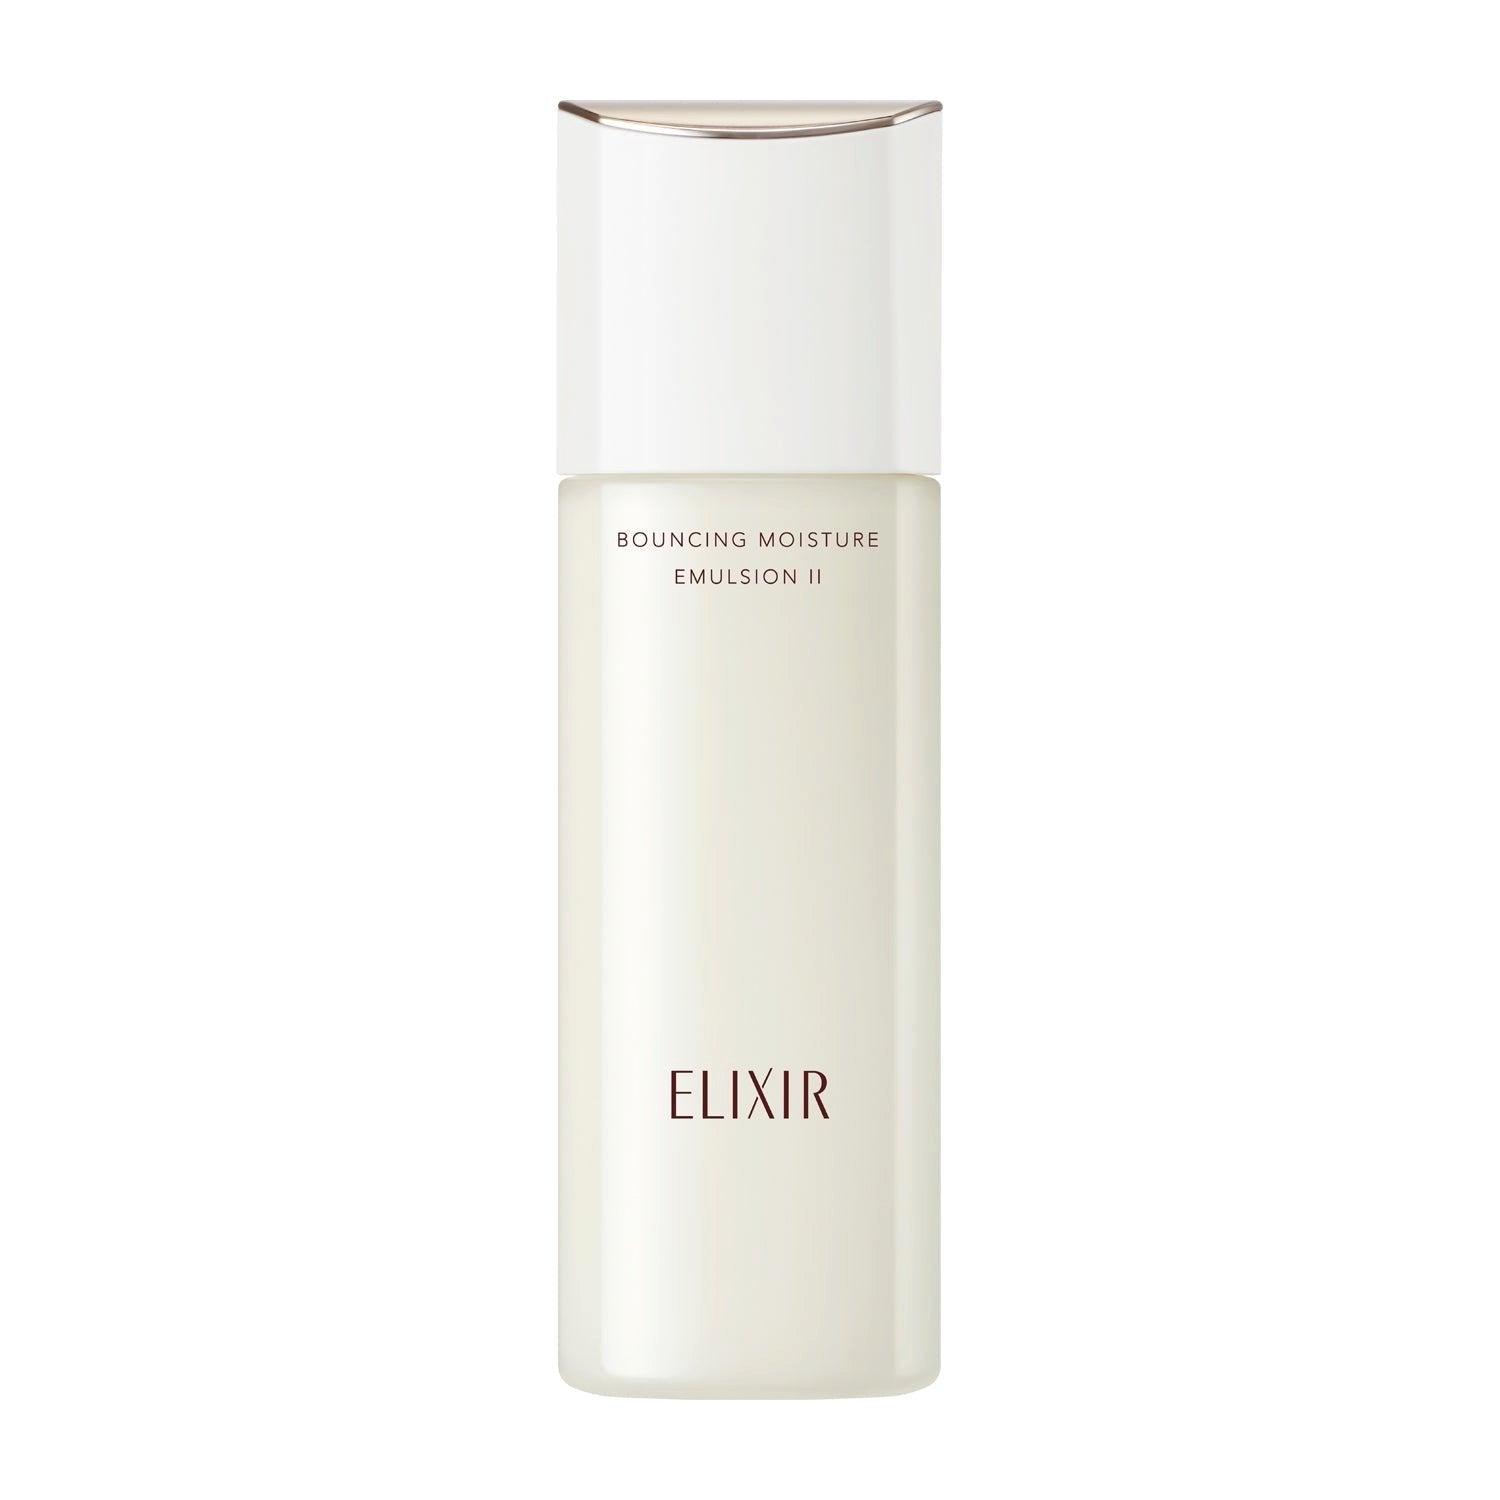 Shiseido Elixir Bouncing Moisture Emulsion Anti Aging Face Milk 130ml